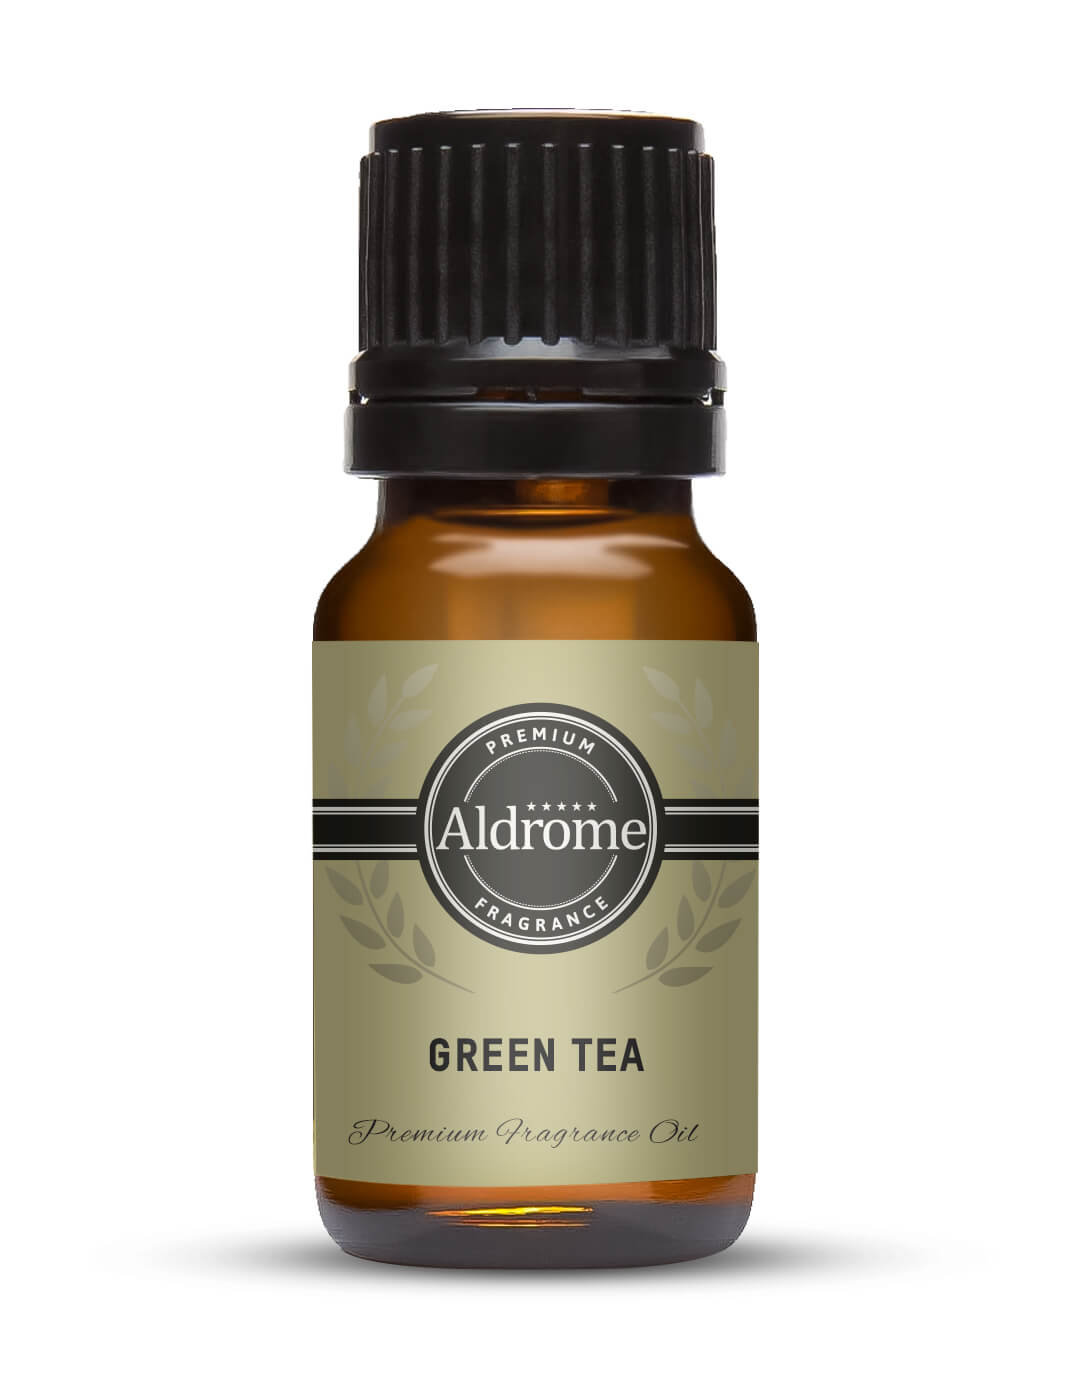 Green Tea Fragrance Oil - 10ml | Buy Green Tea Fragrance Oils Online at Best Prices